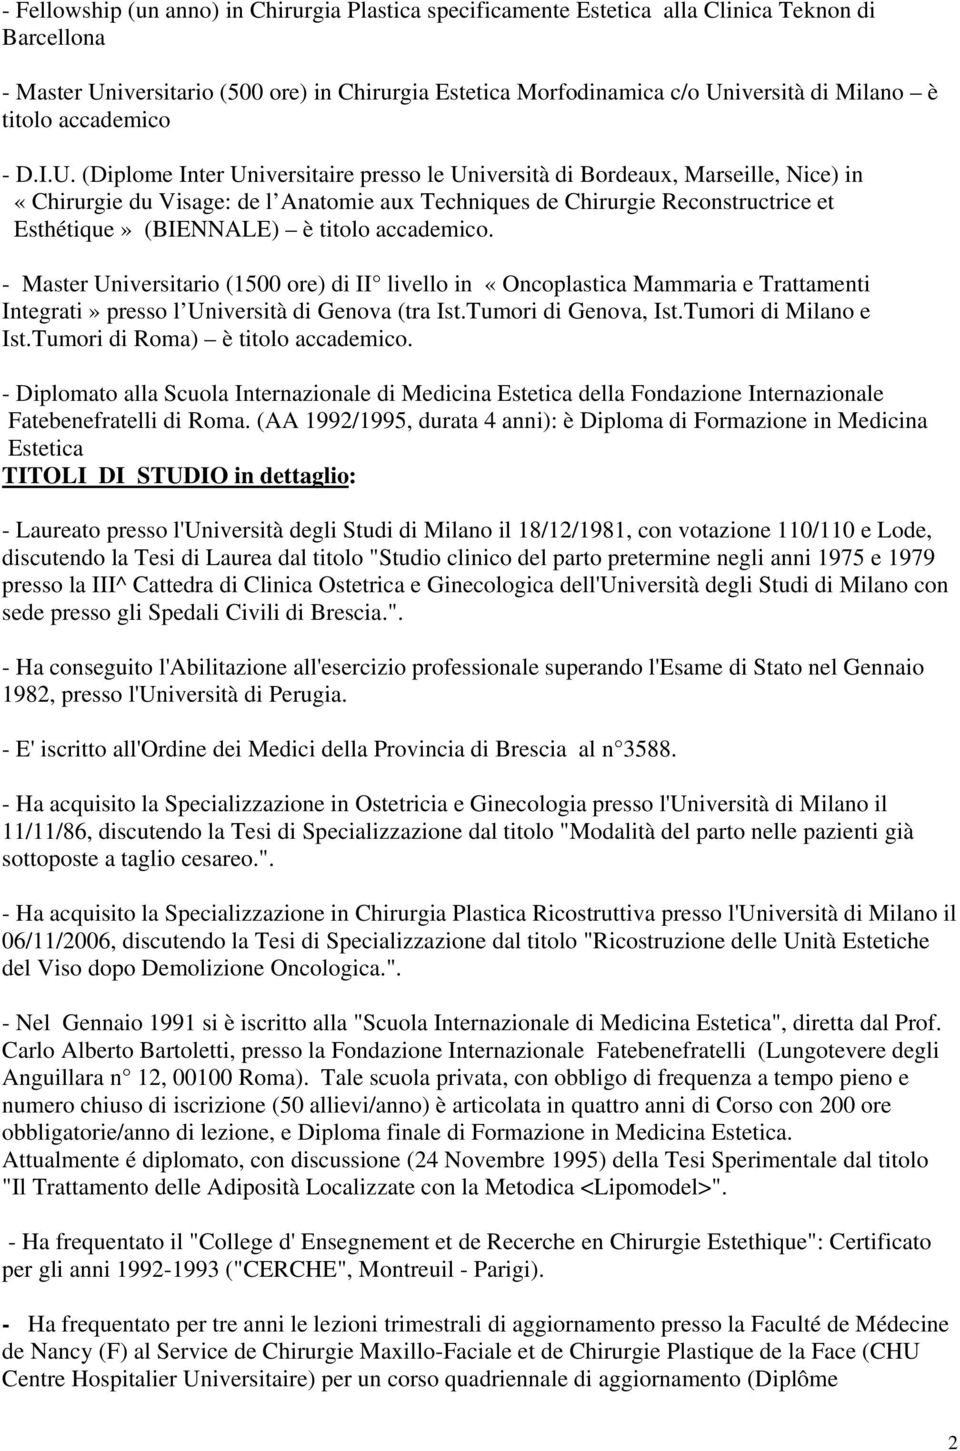 (Diplome Inter Universitaire presso le Università di Bordeaux, Marseille, Nice) in «Chirurgie du Visage: de l Anatomie aux Techniques de Chirurgie Reconstructrice et Esthétique» (BIENNALE) è titolo